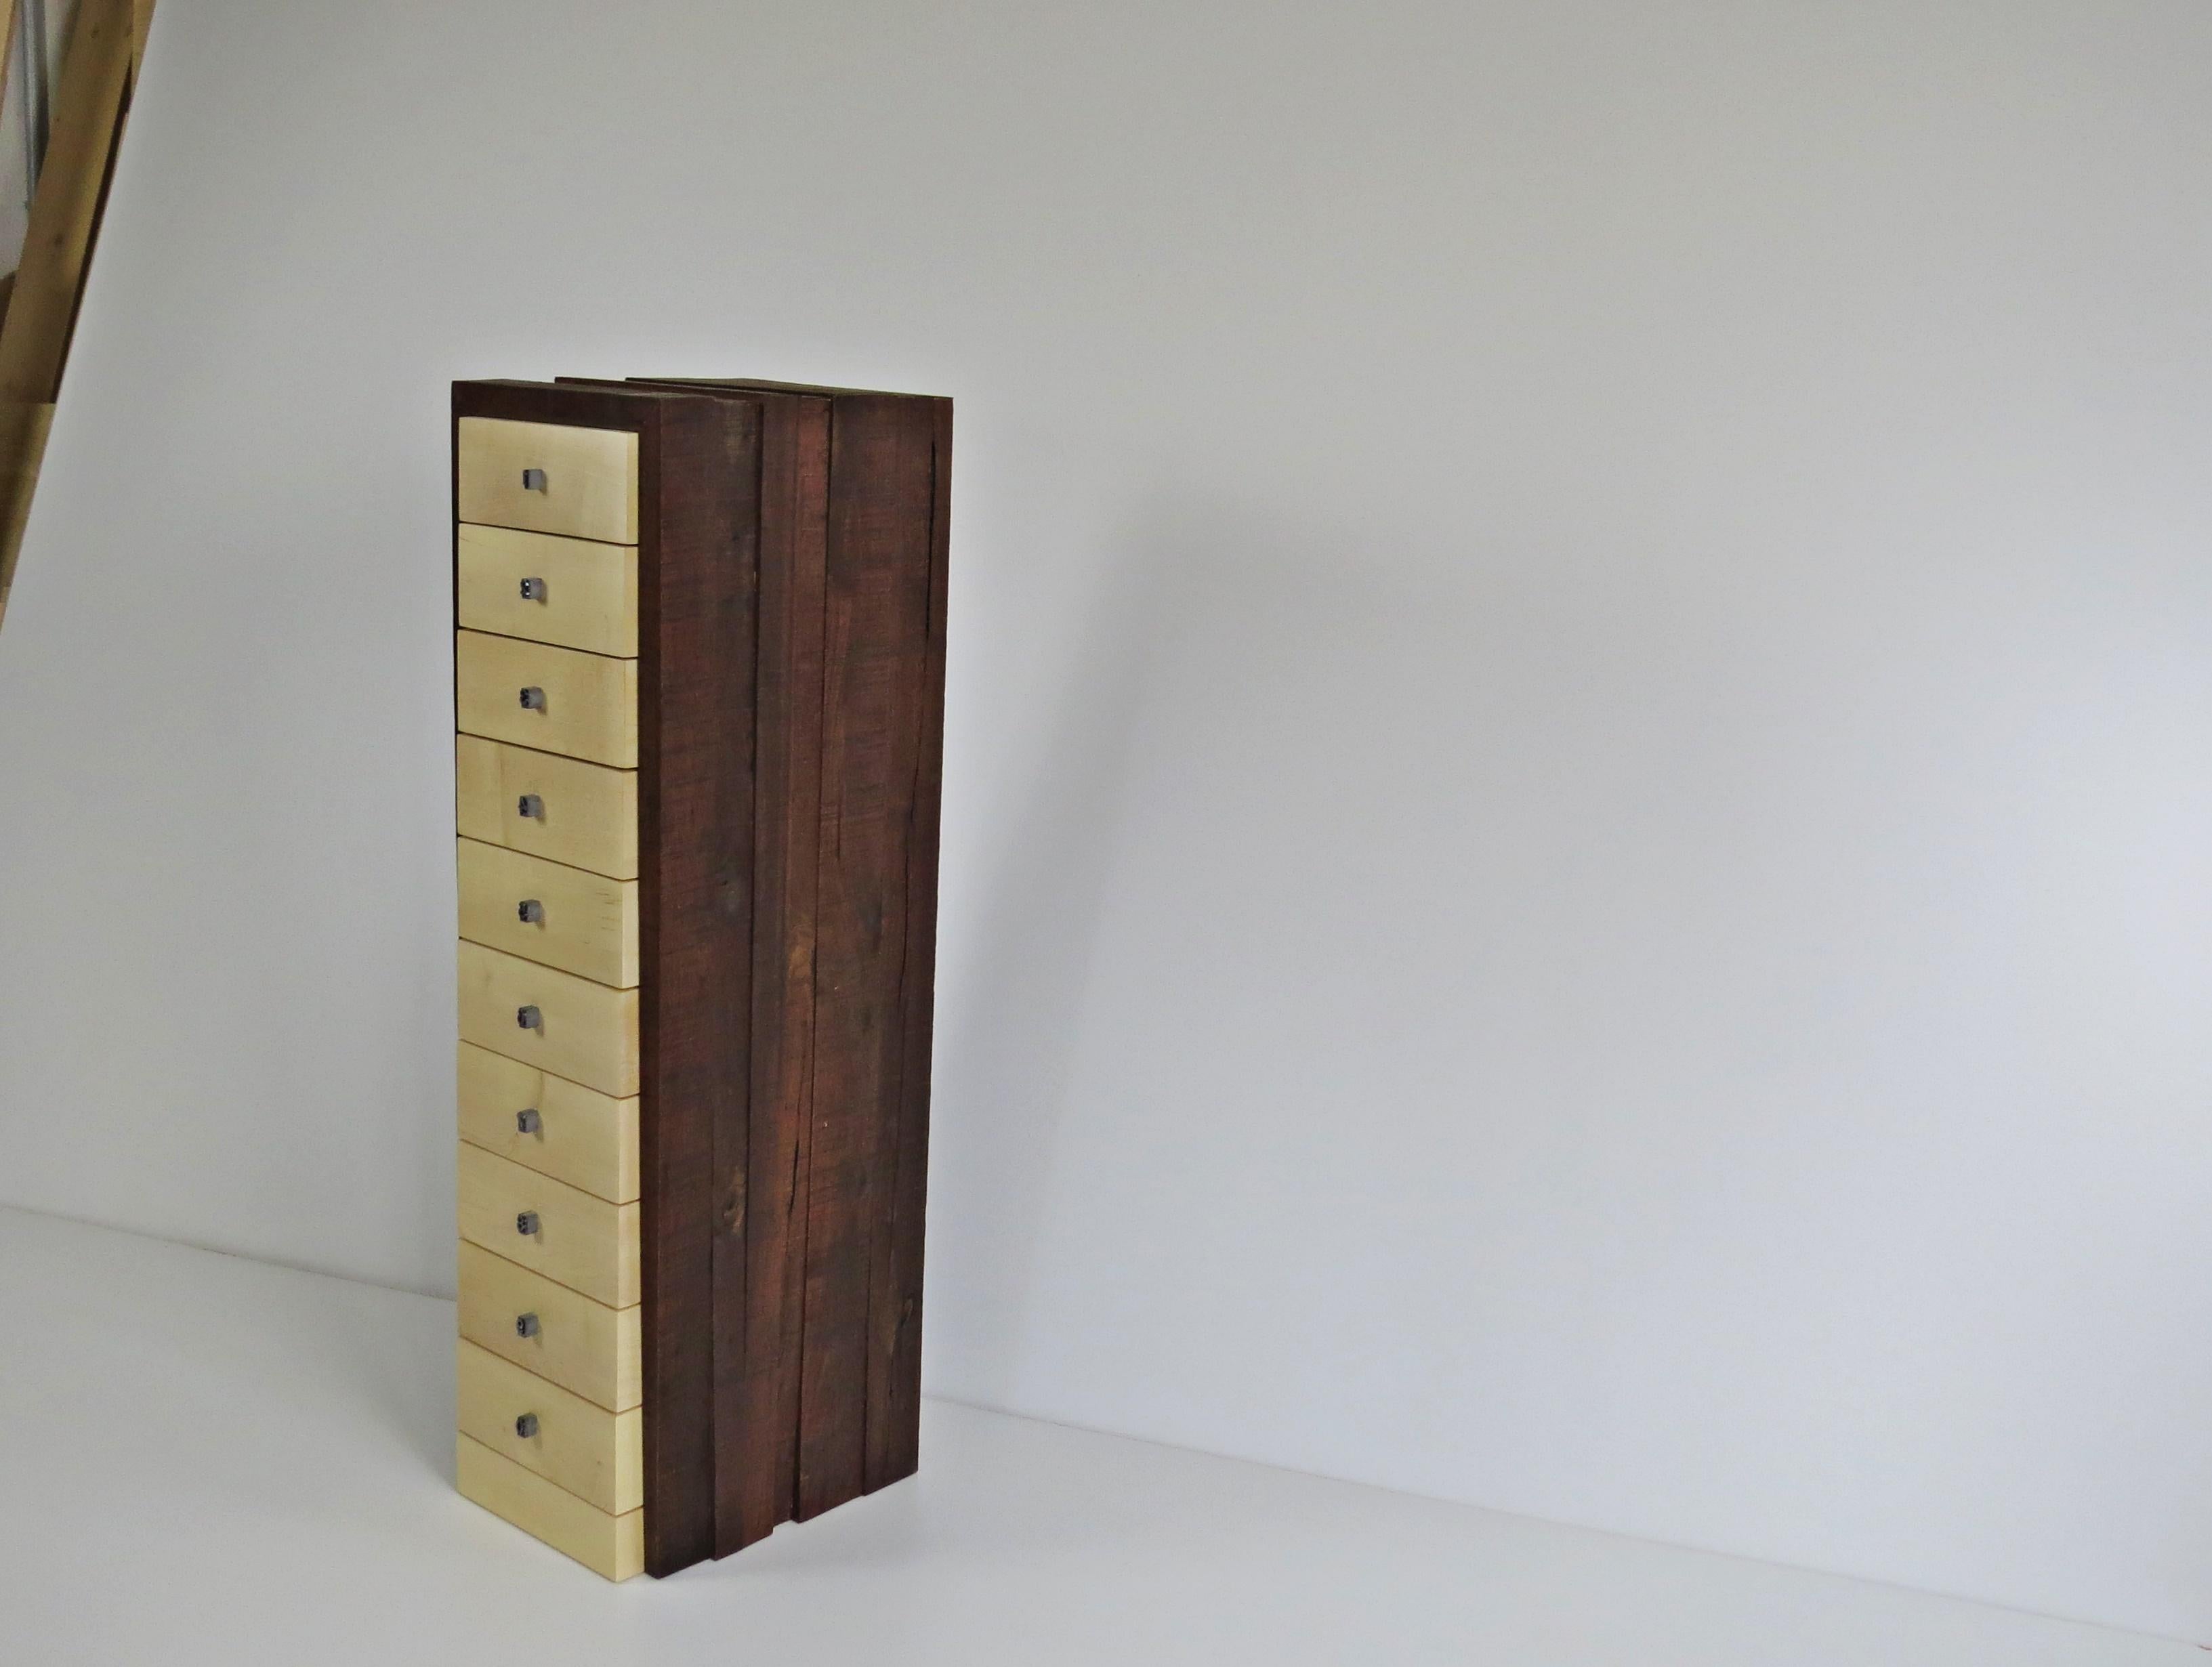 German Organic Modern, European, 21st Century, Drawer Cabinet, Dresser, Walnut, Maple For Sale